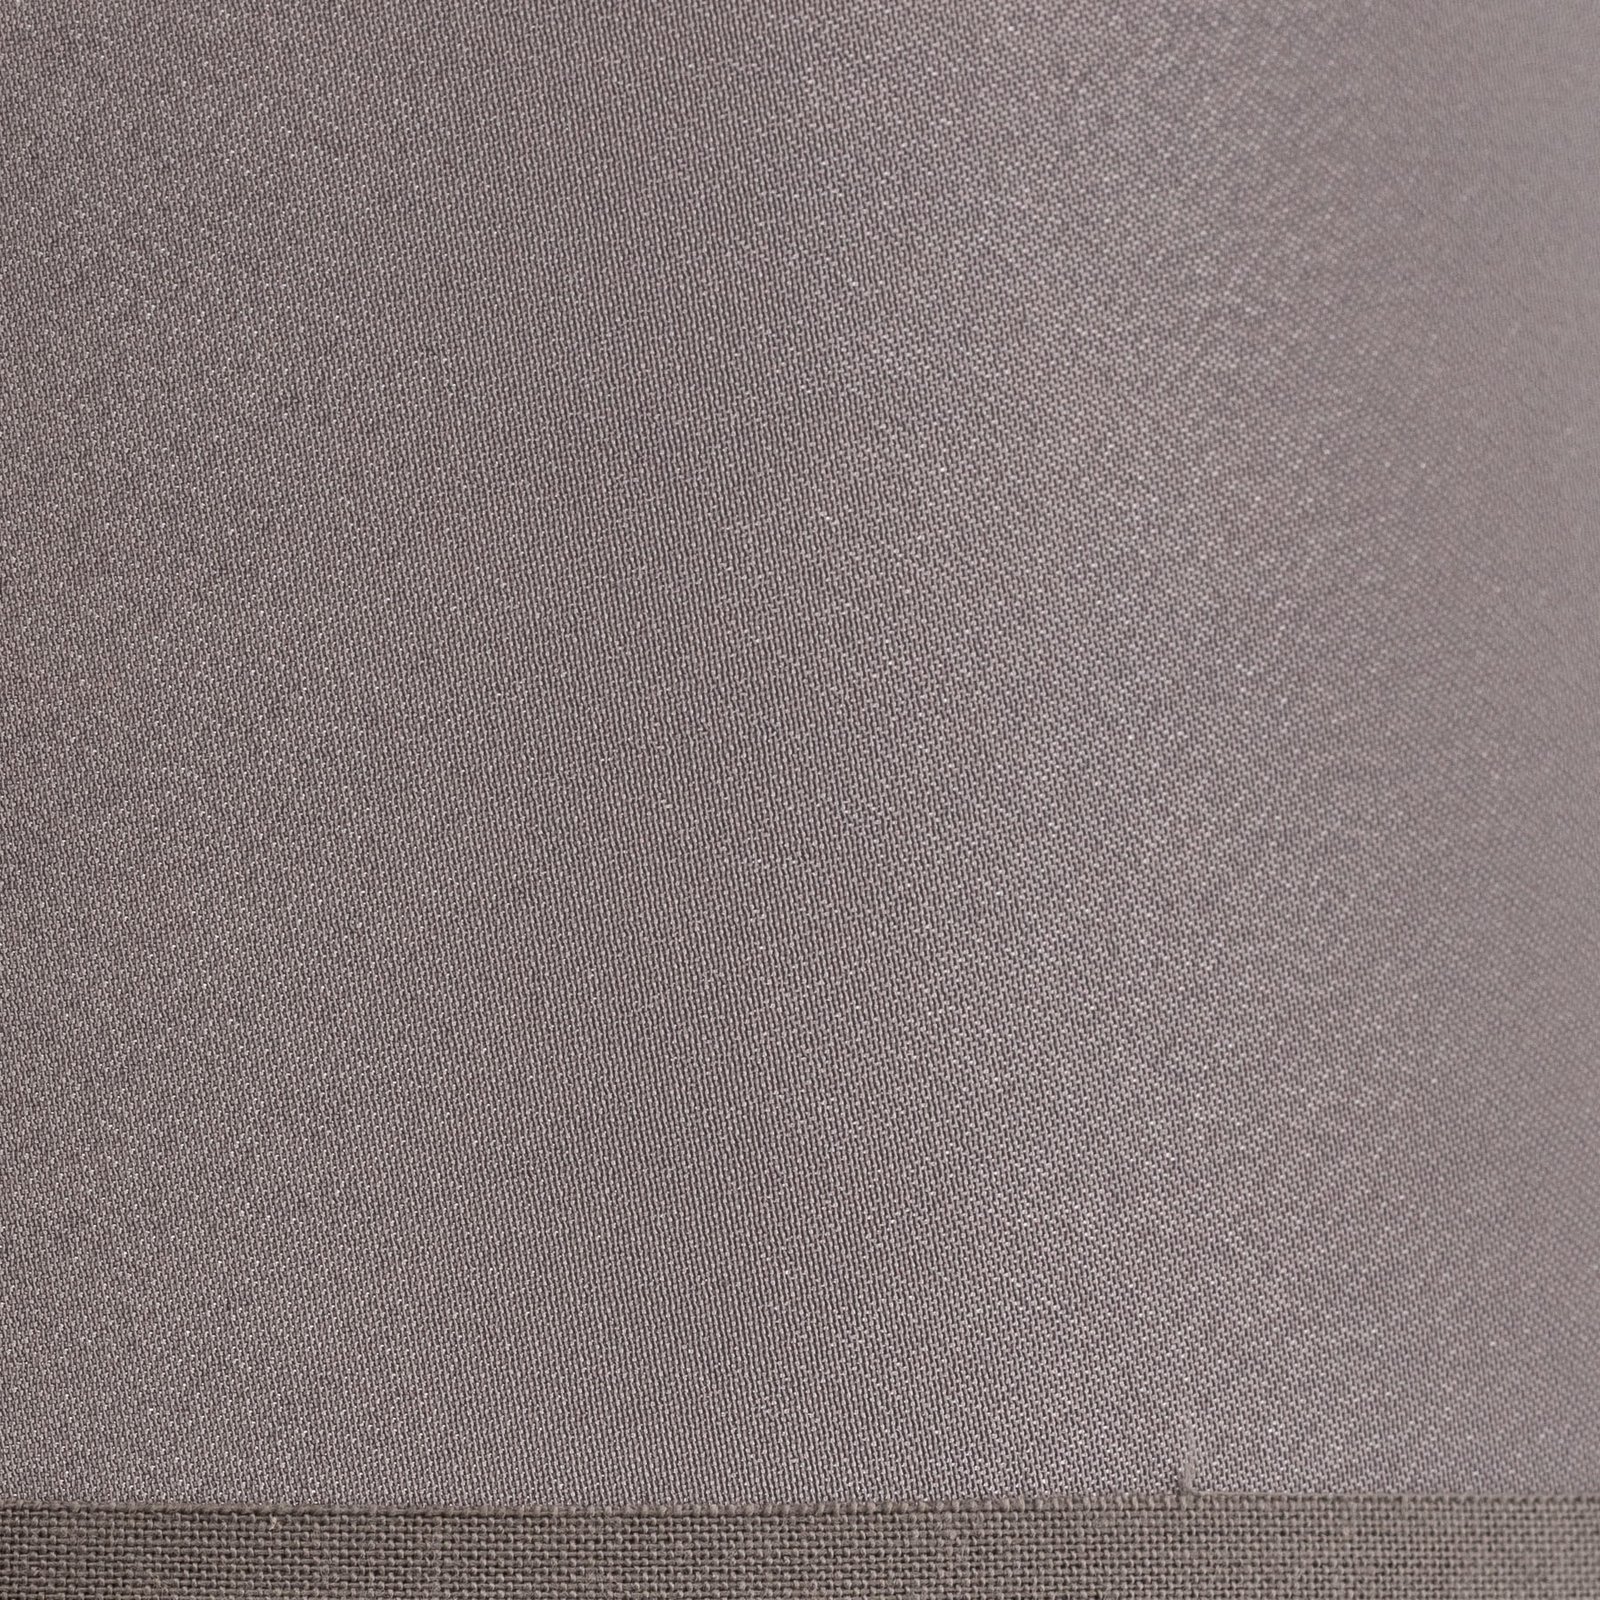 Abat-jour Cone hauteur 18 cm, chintz gris/blanc